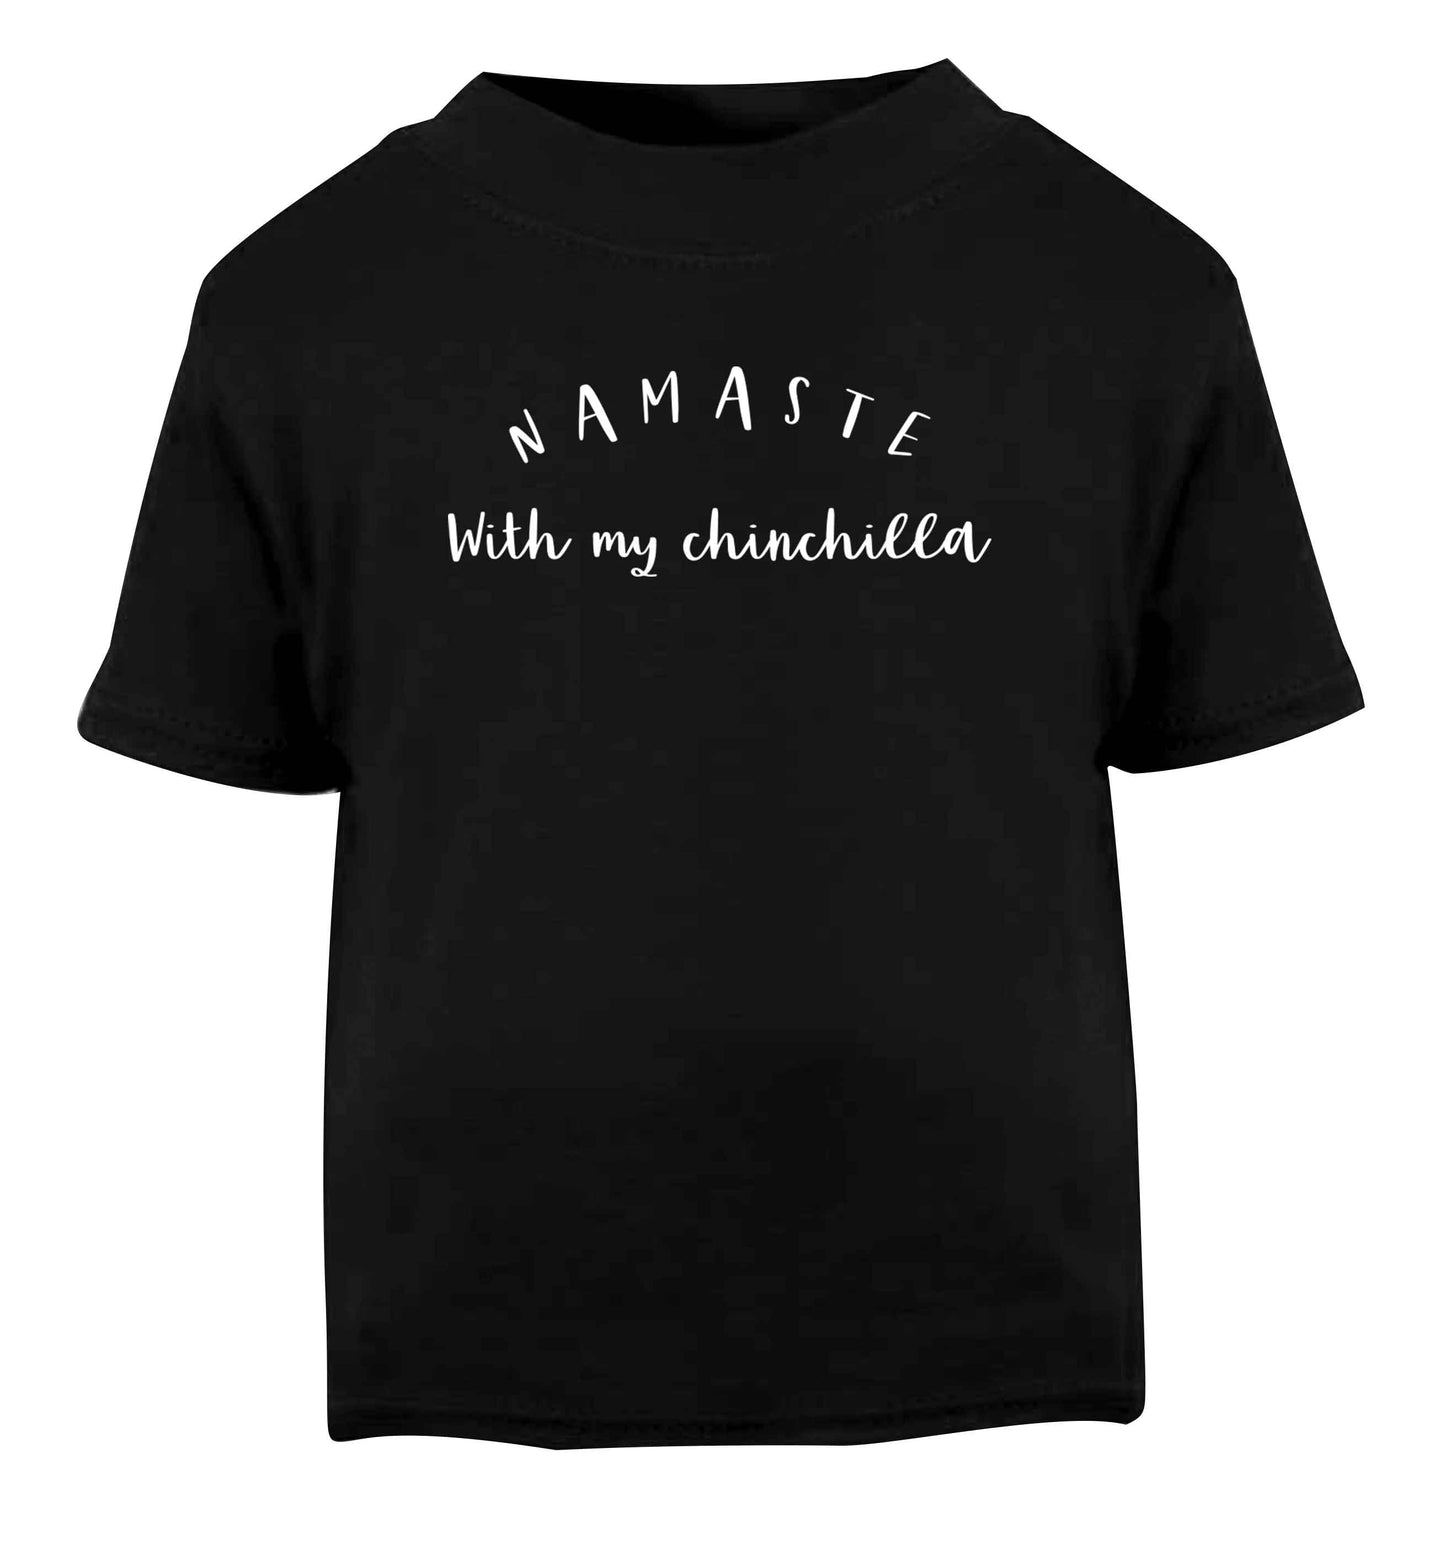 Namaste with my chinchilla Black Baby Toddler Tshirt 2 years